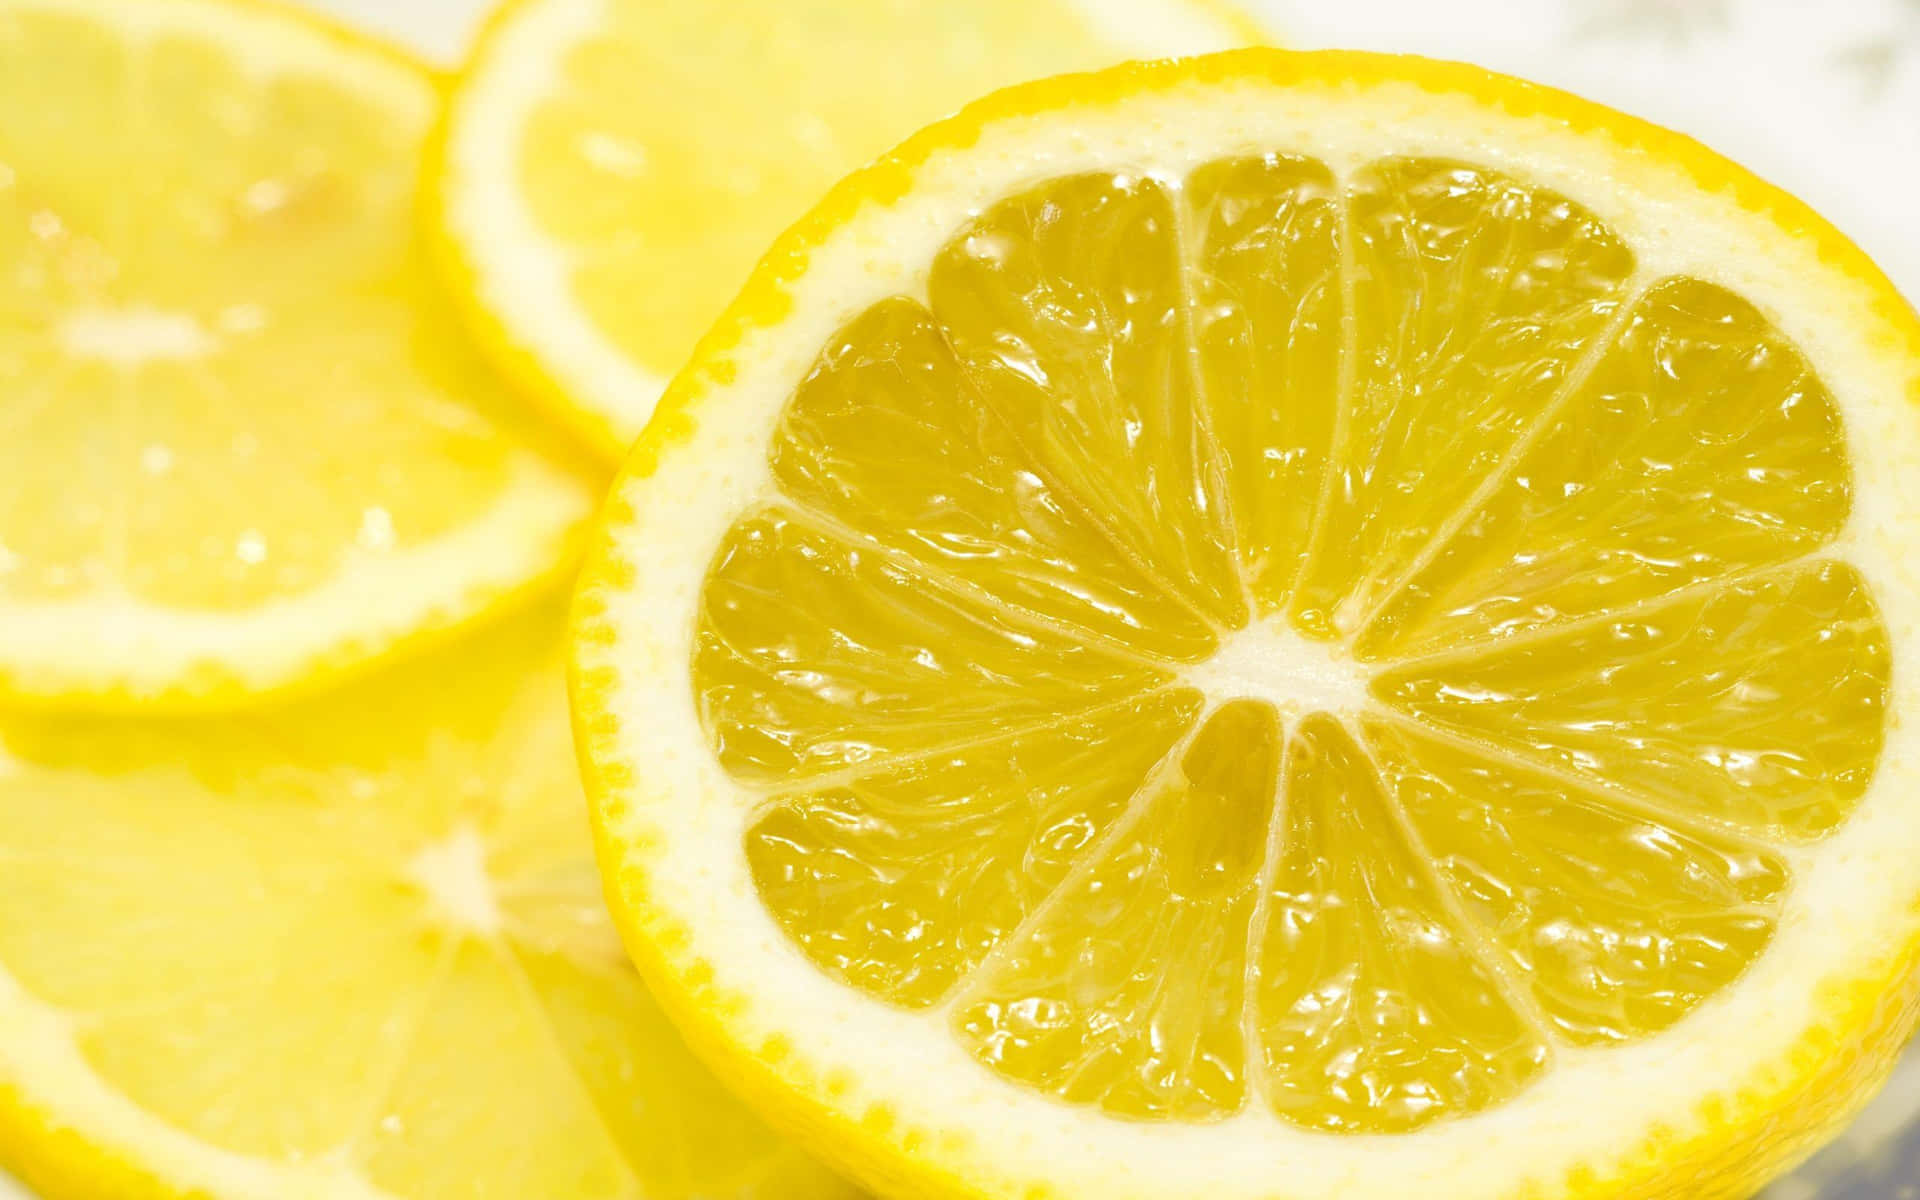 Welcome the zesty, refreshing taste of Lemon